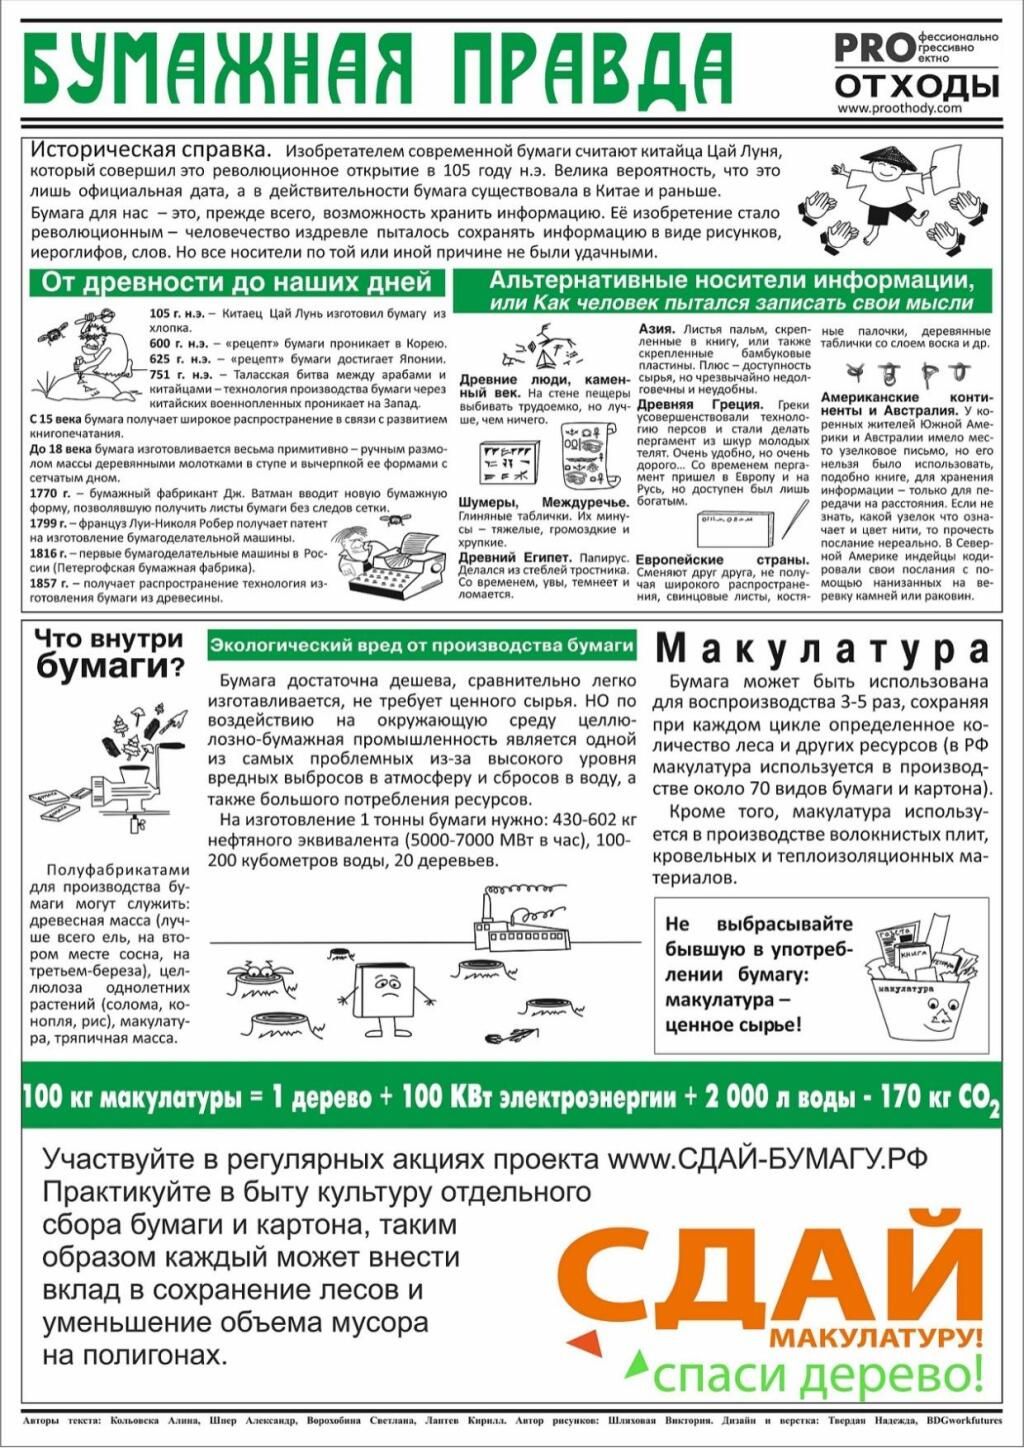 В Аксубаево пройдёт Всероссийский Эко-Маpафон ПЕРЕРАБОТКА: «Сдай макулатуру - спаси дерево»